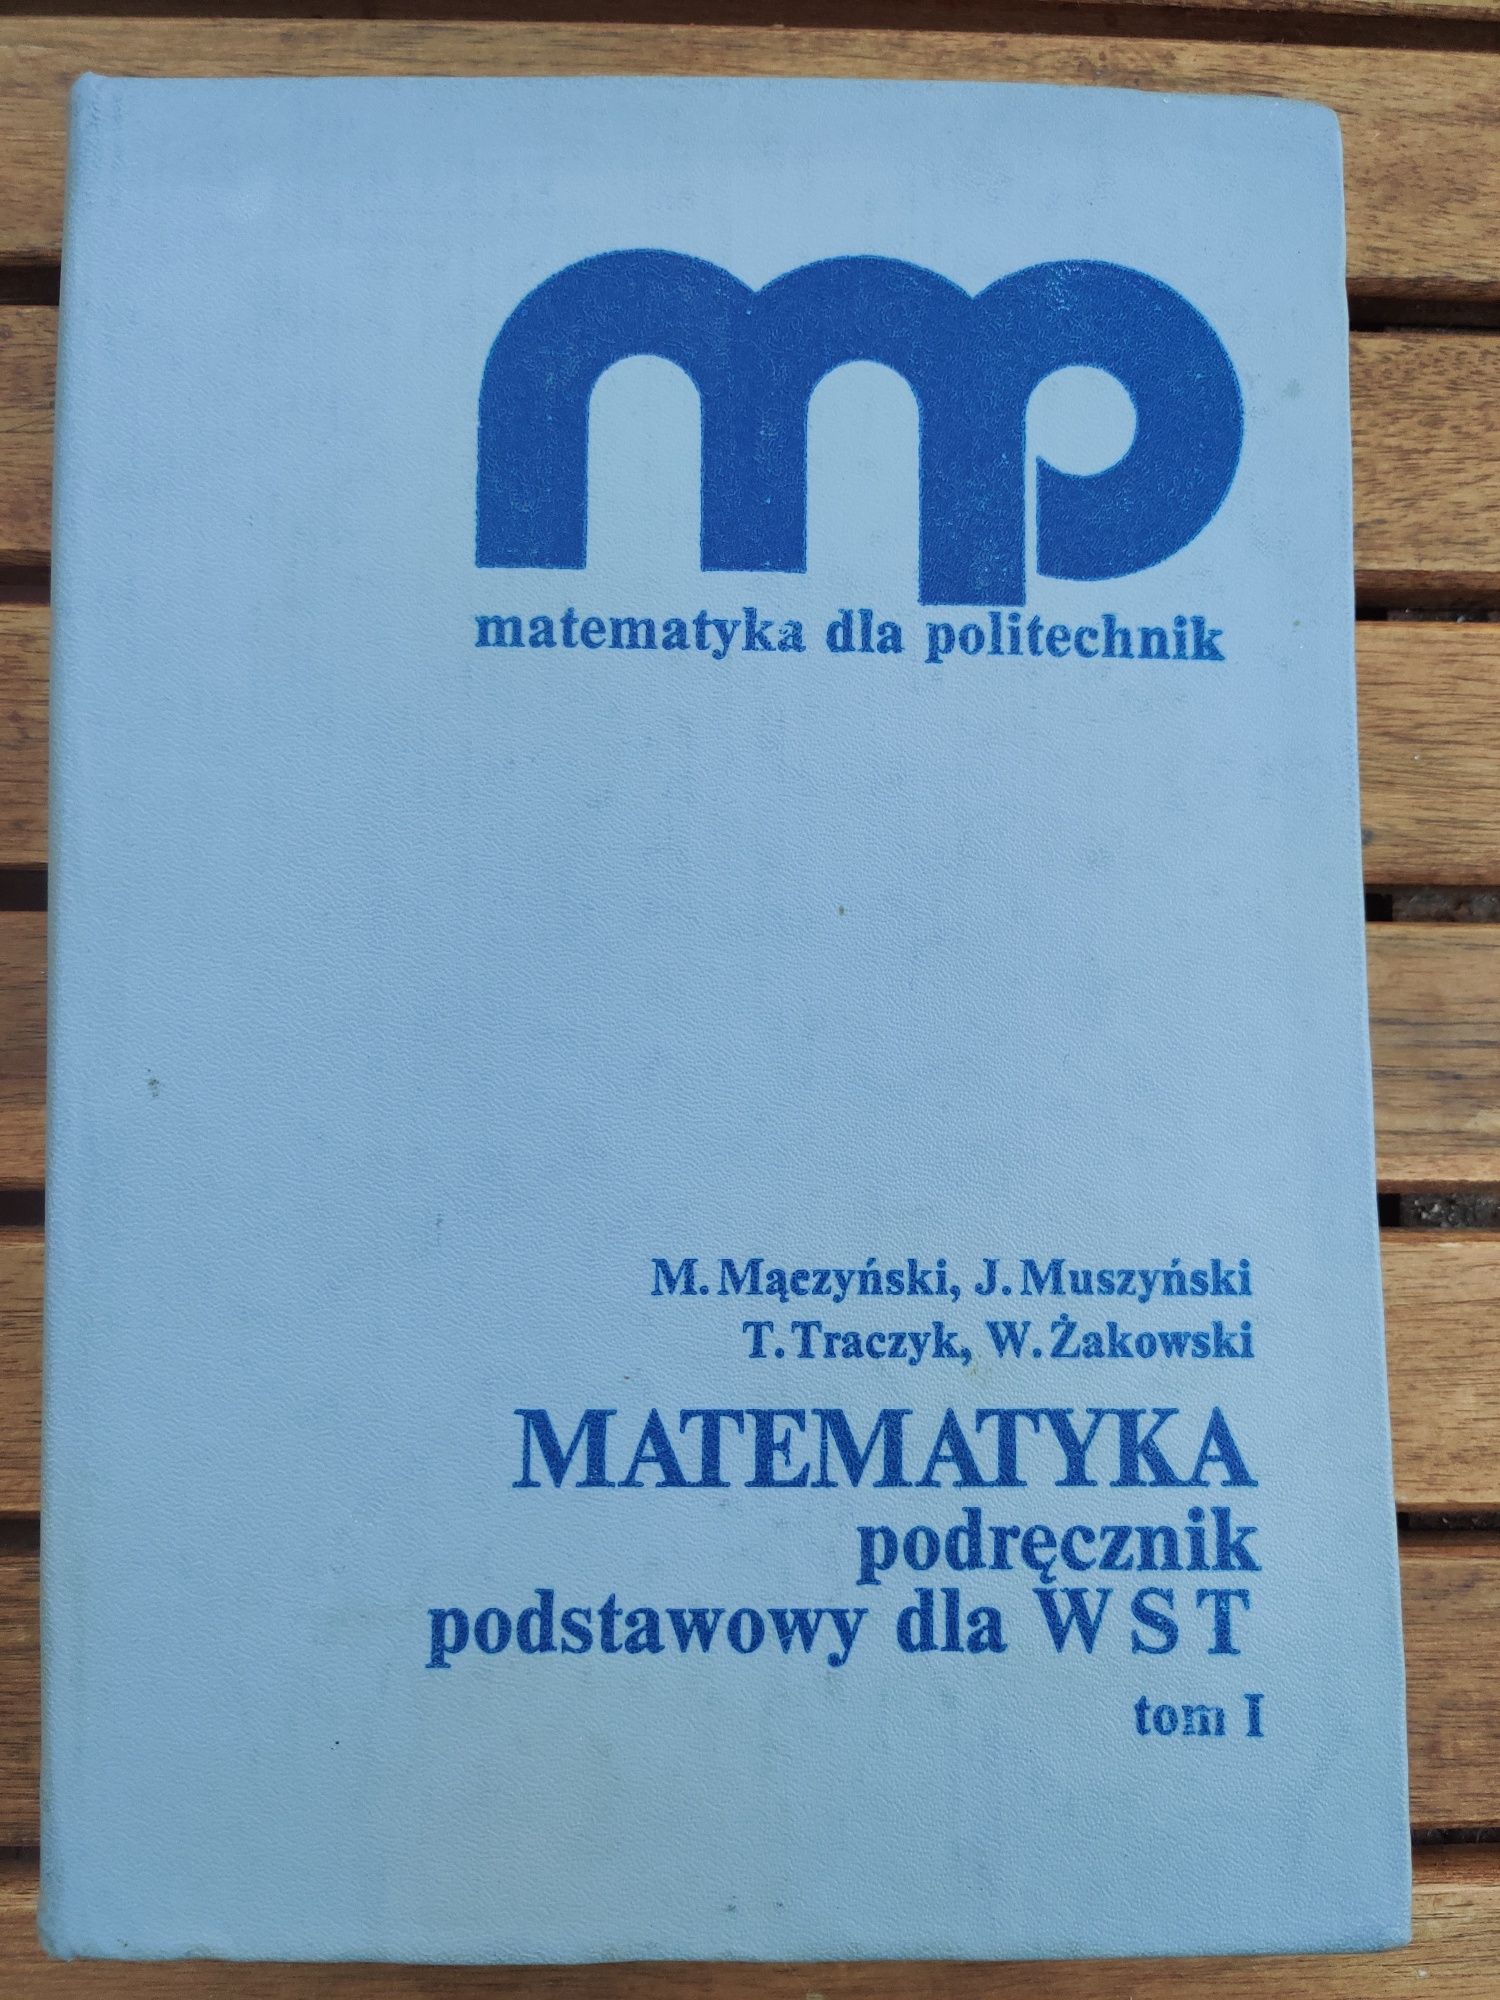 MATEMATYKA dla politechnik, podręcznik dla WST